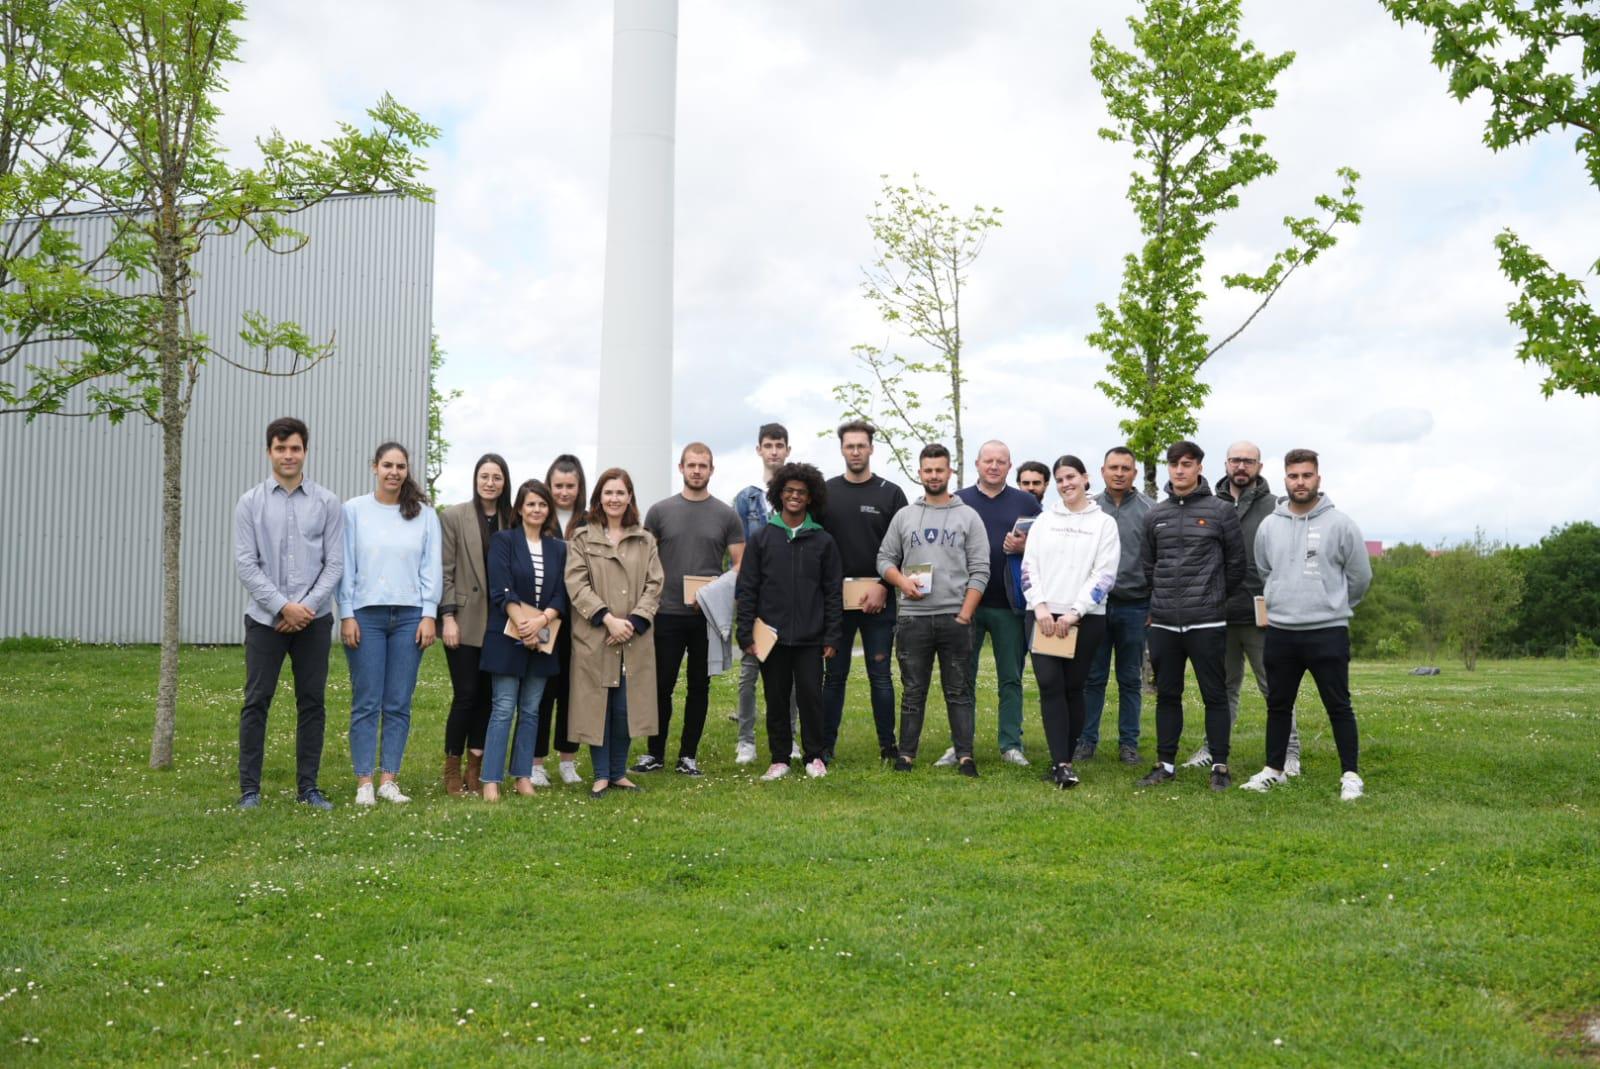 El Tour del Talento acerca las energías renovables y los valores del deporte a los jóvenes de Lugo